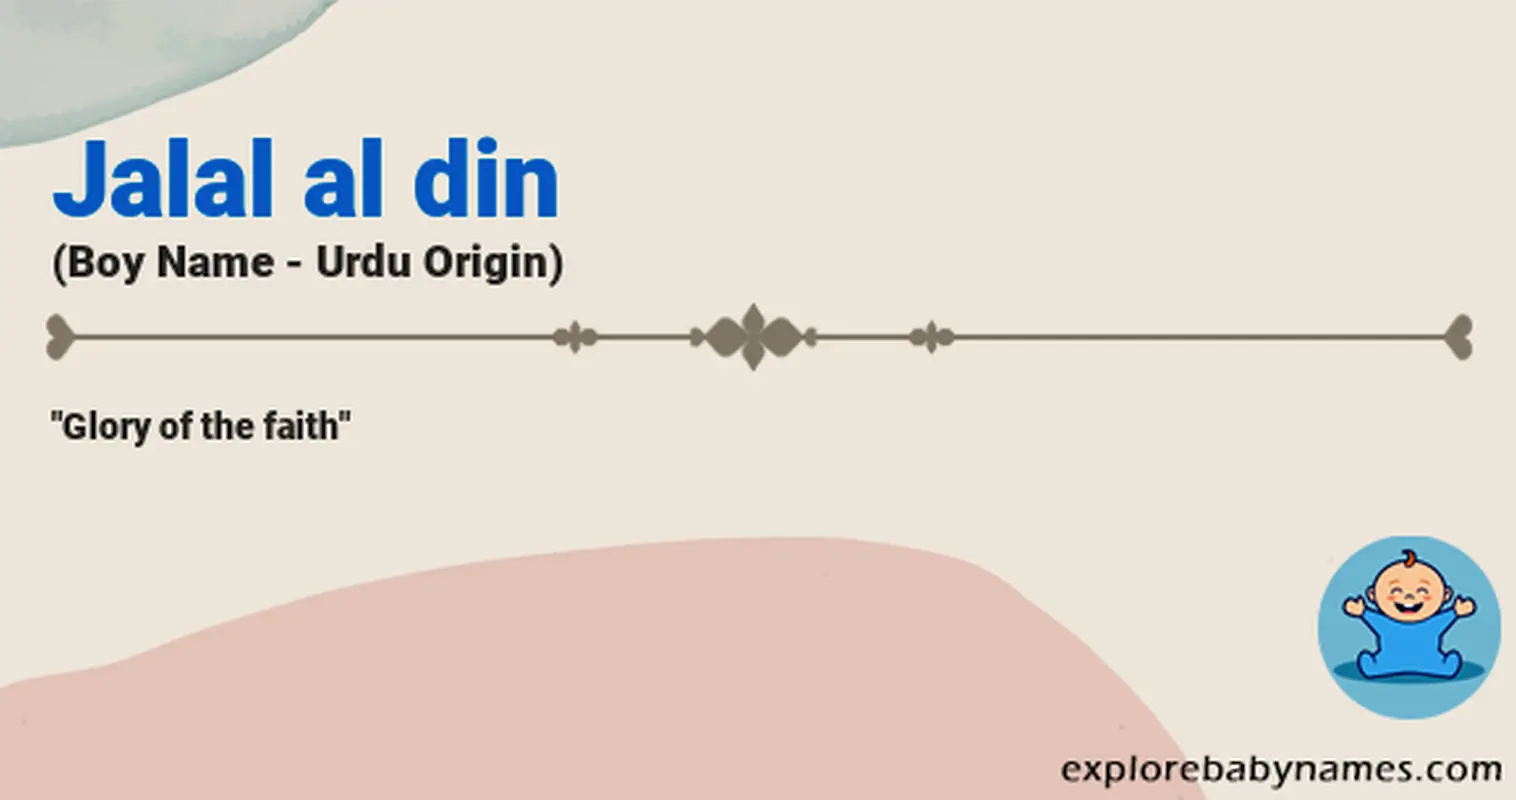 Meaning of Jalal al din